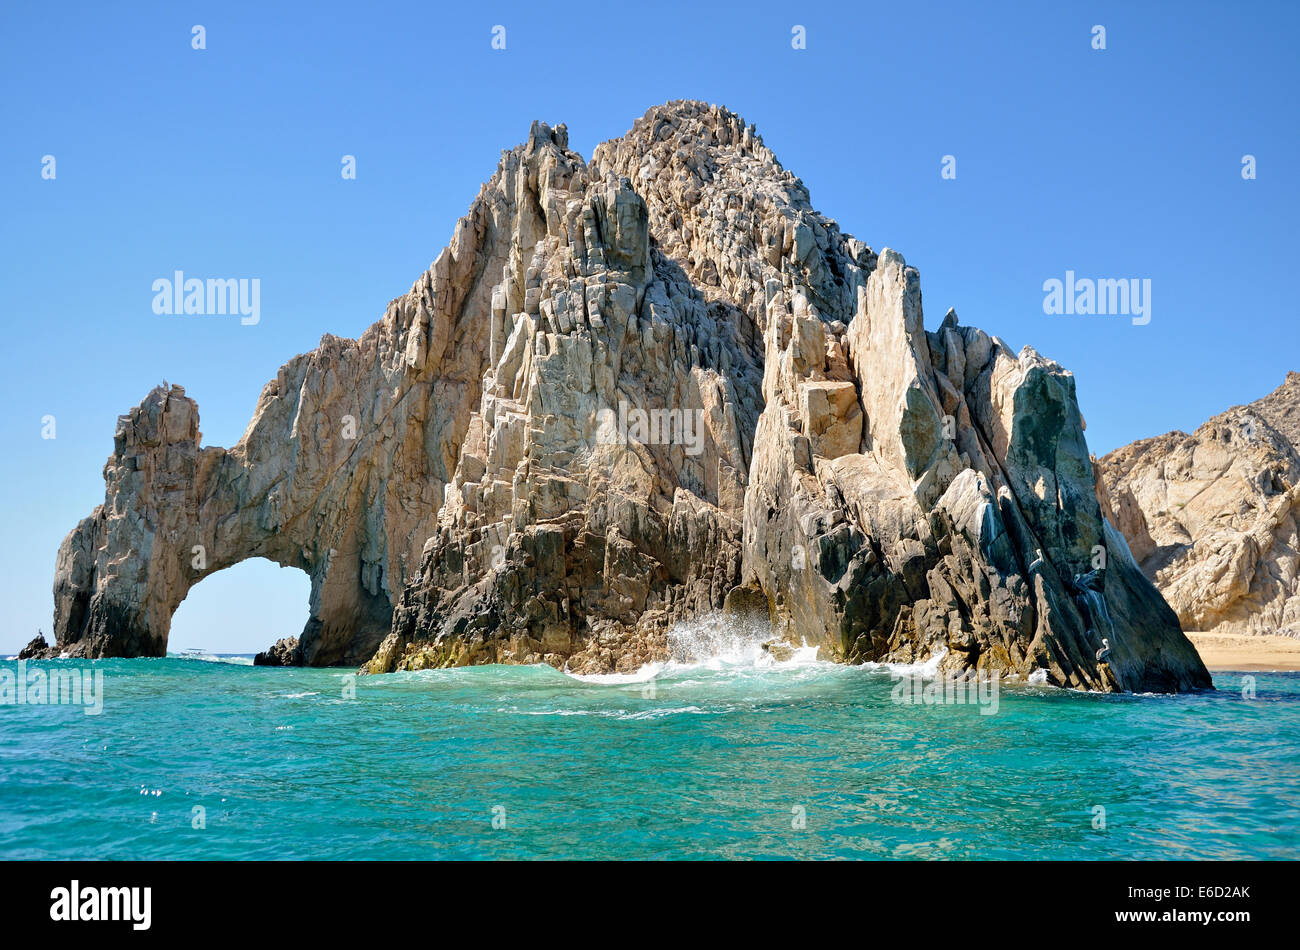 Arch Rock El Arco avec rochers côtiers, Finisterra, Cabo San Lucas, Baja California Sur, Mexique Banque D'Images